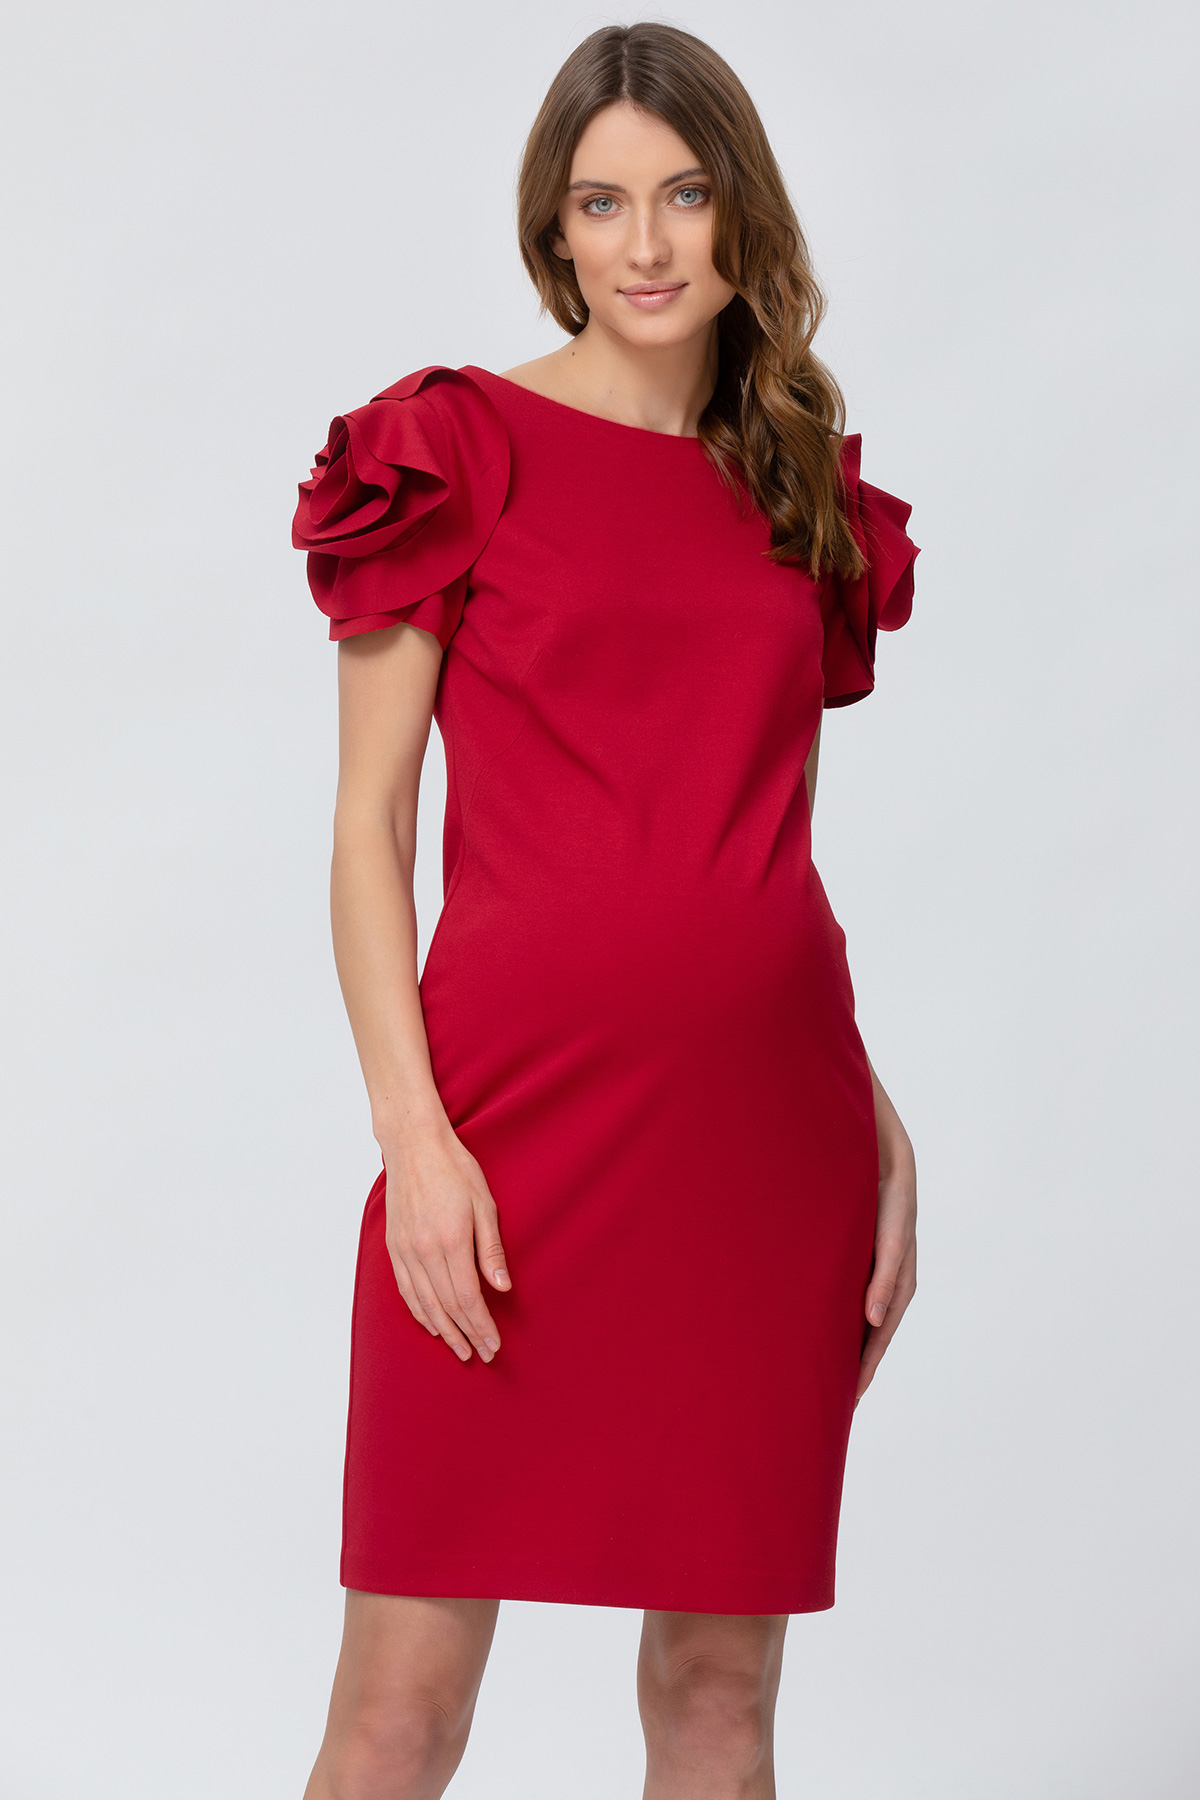 Capri Maternity Dress in Strawberry - hautemama